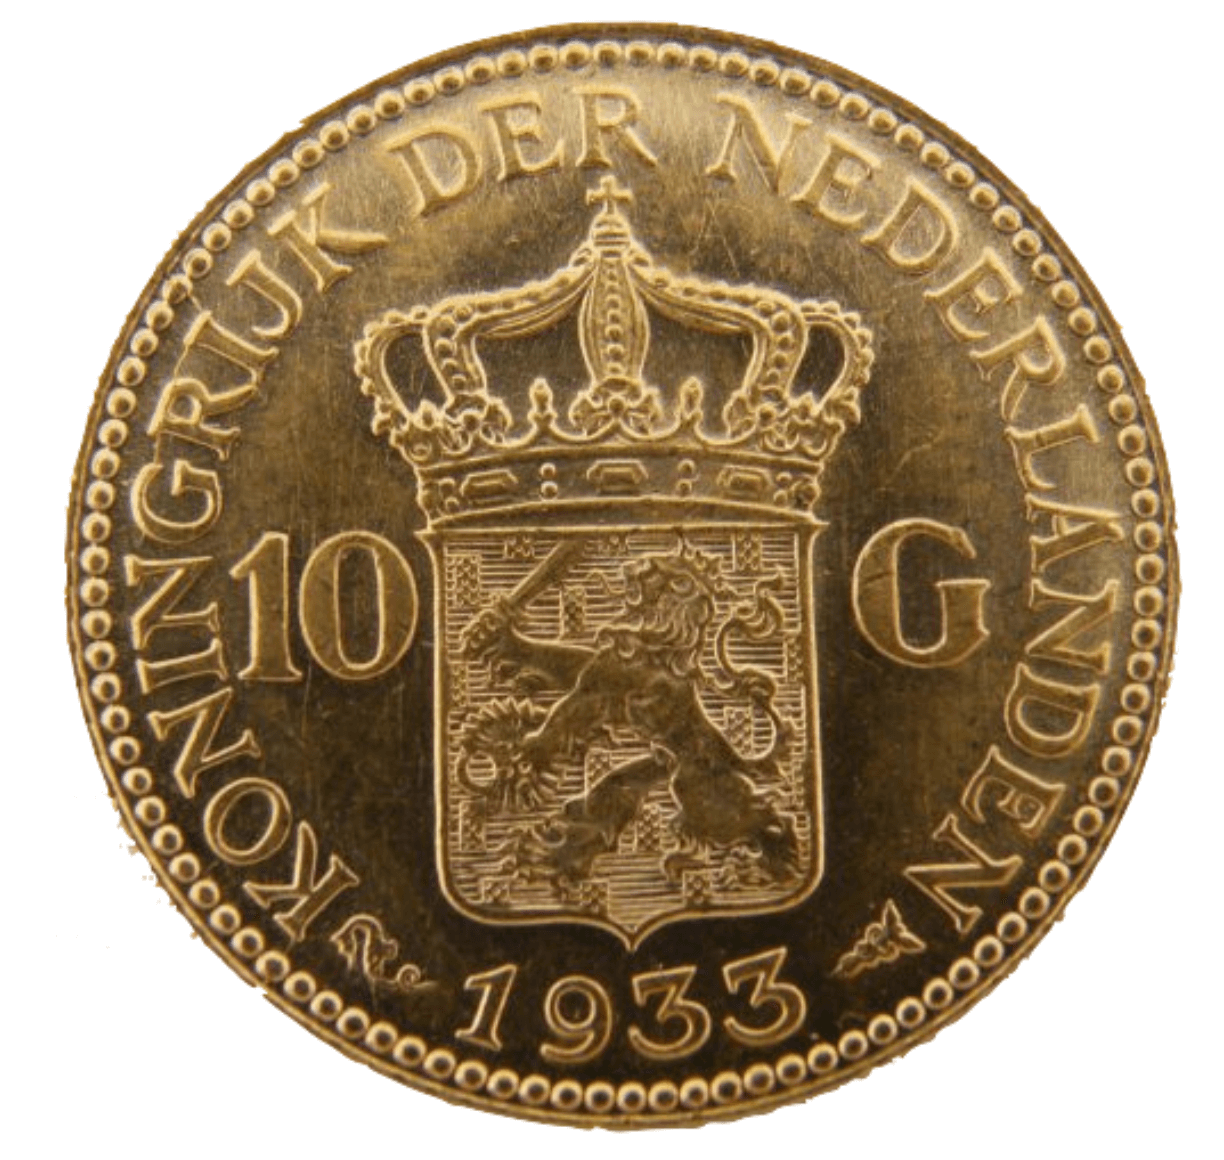 10 gouden gulden munt